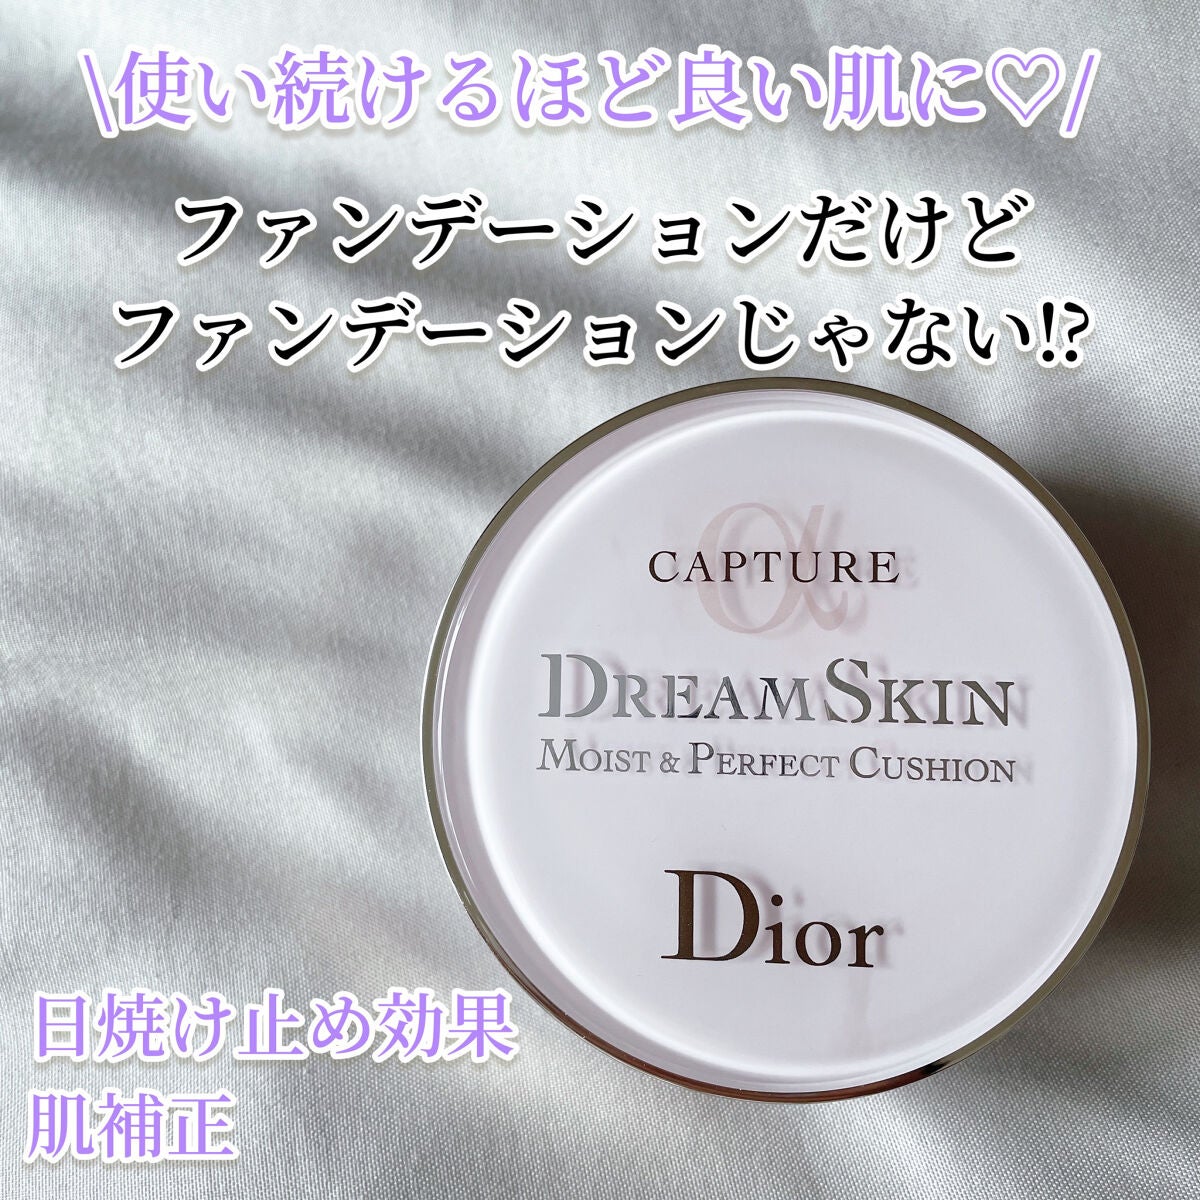 【Dior】カプチュール ドリームスキン モイスト クッション #000